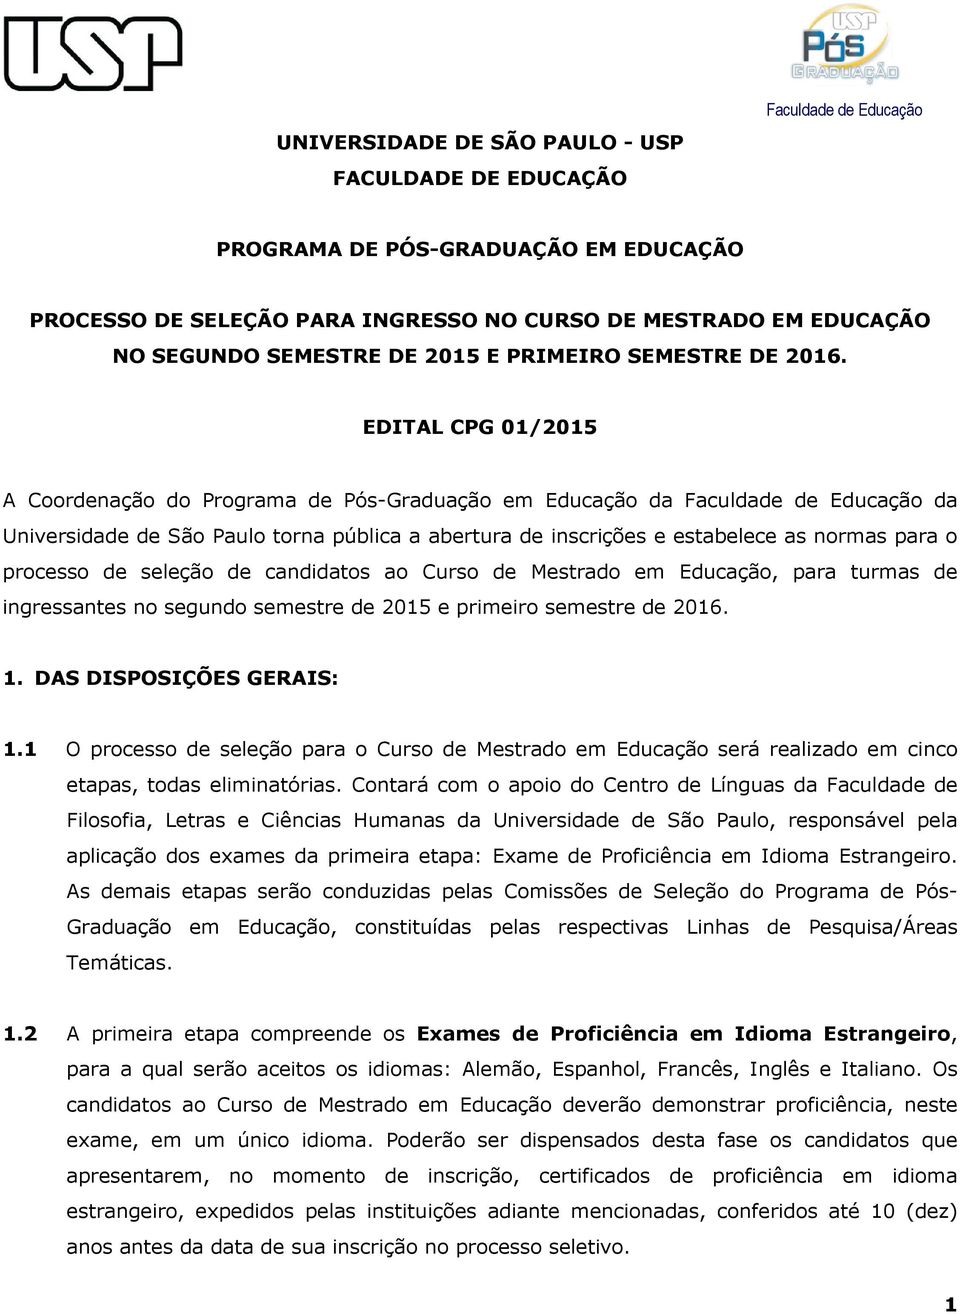 EDITAL CPG 01/2015 A Coordenação do Programa de Pós-Graduação em Educação da Faculdade de Educação da Universidade de São Paulo torna pública a abertura de inscrições e estabelece as normas para o